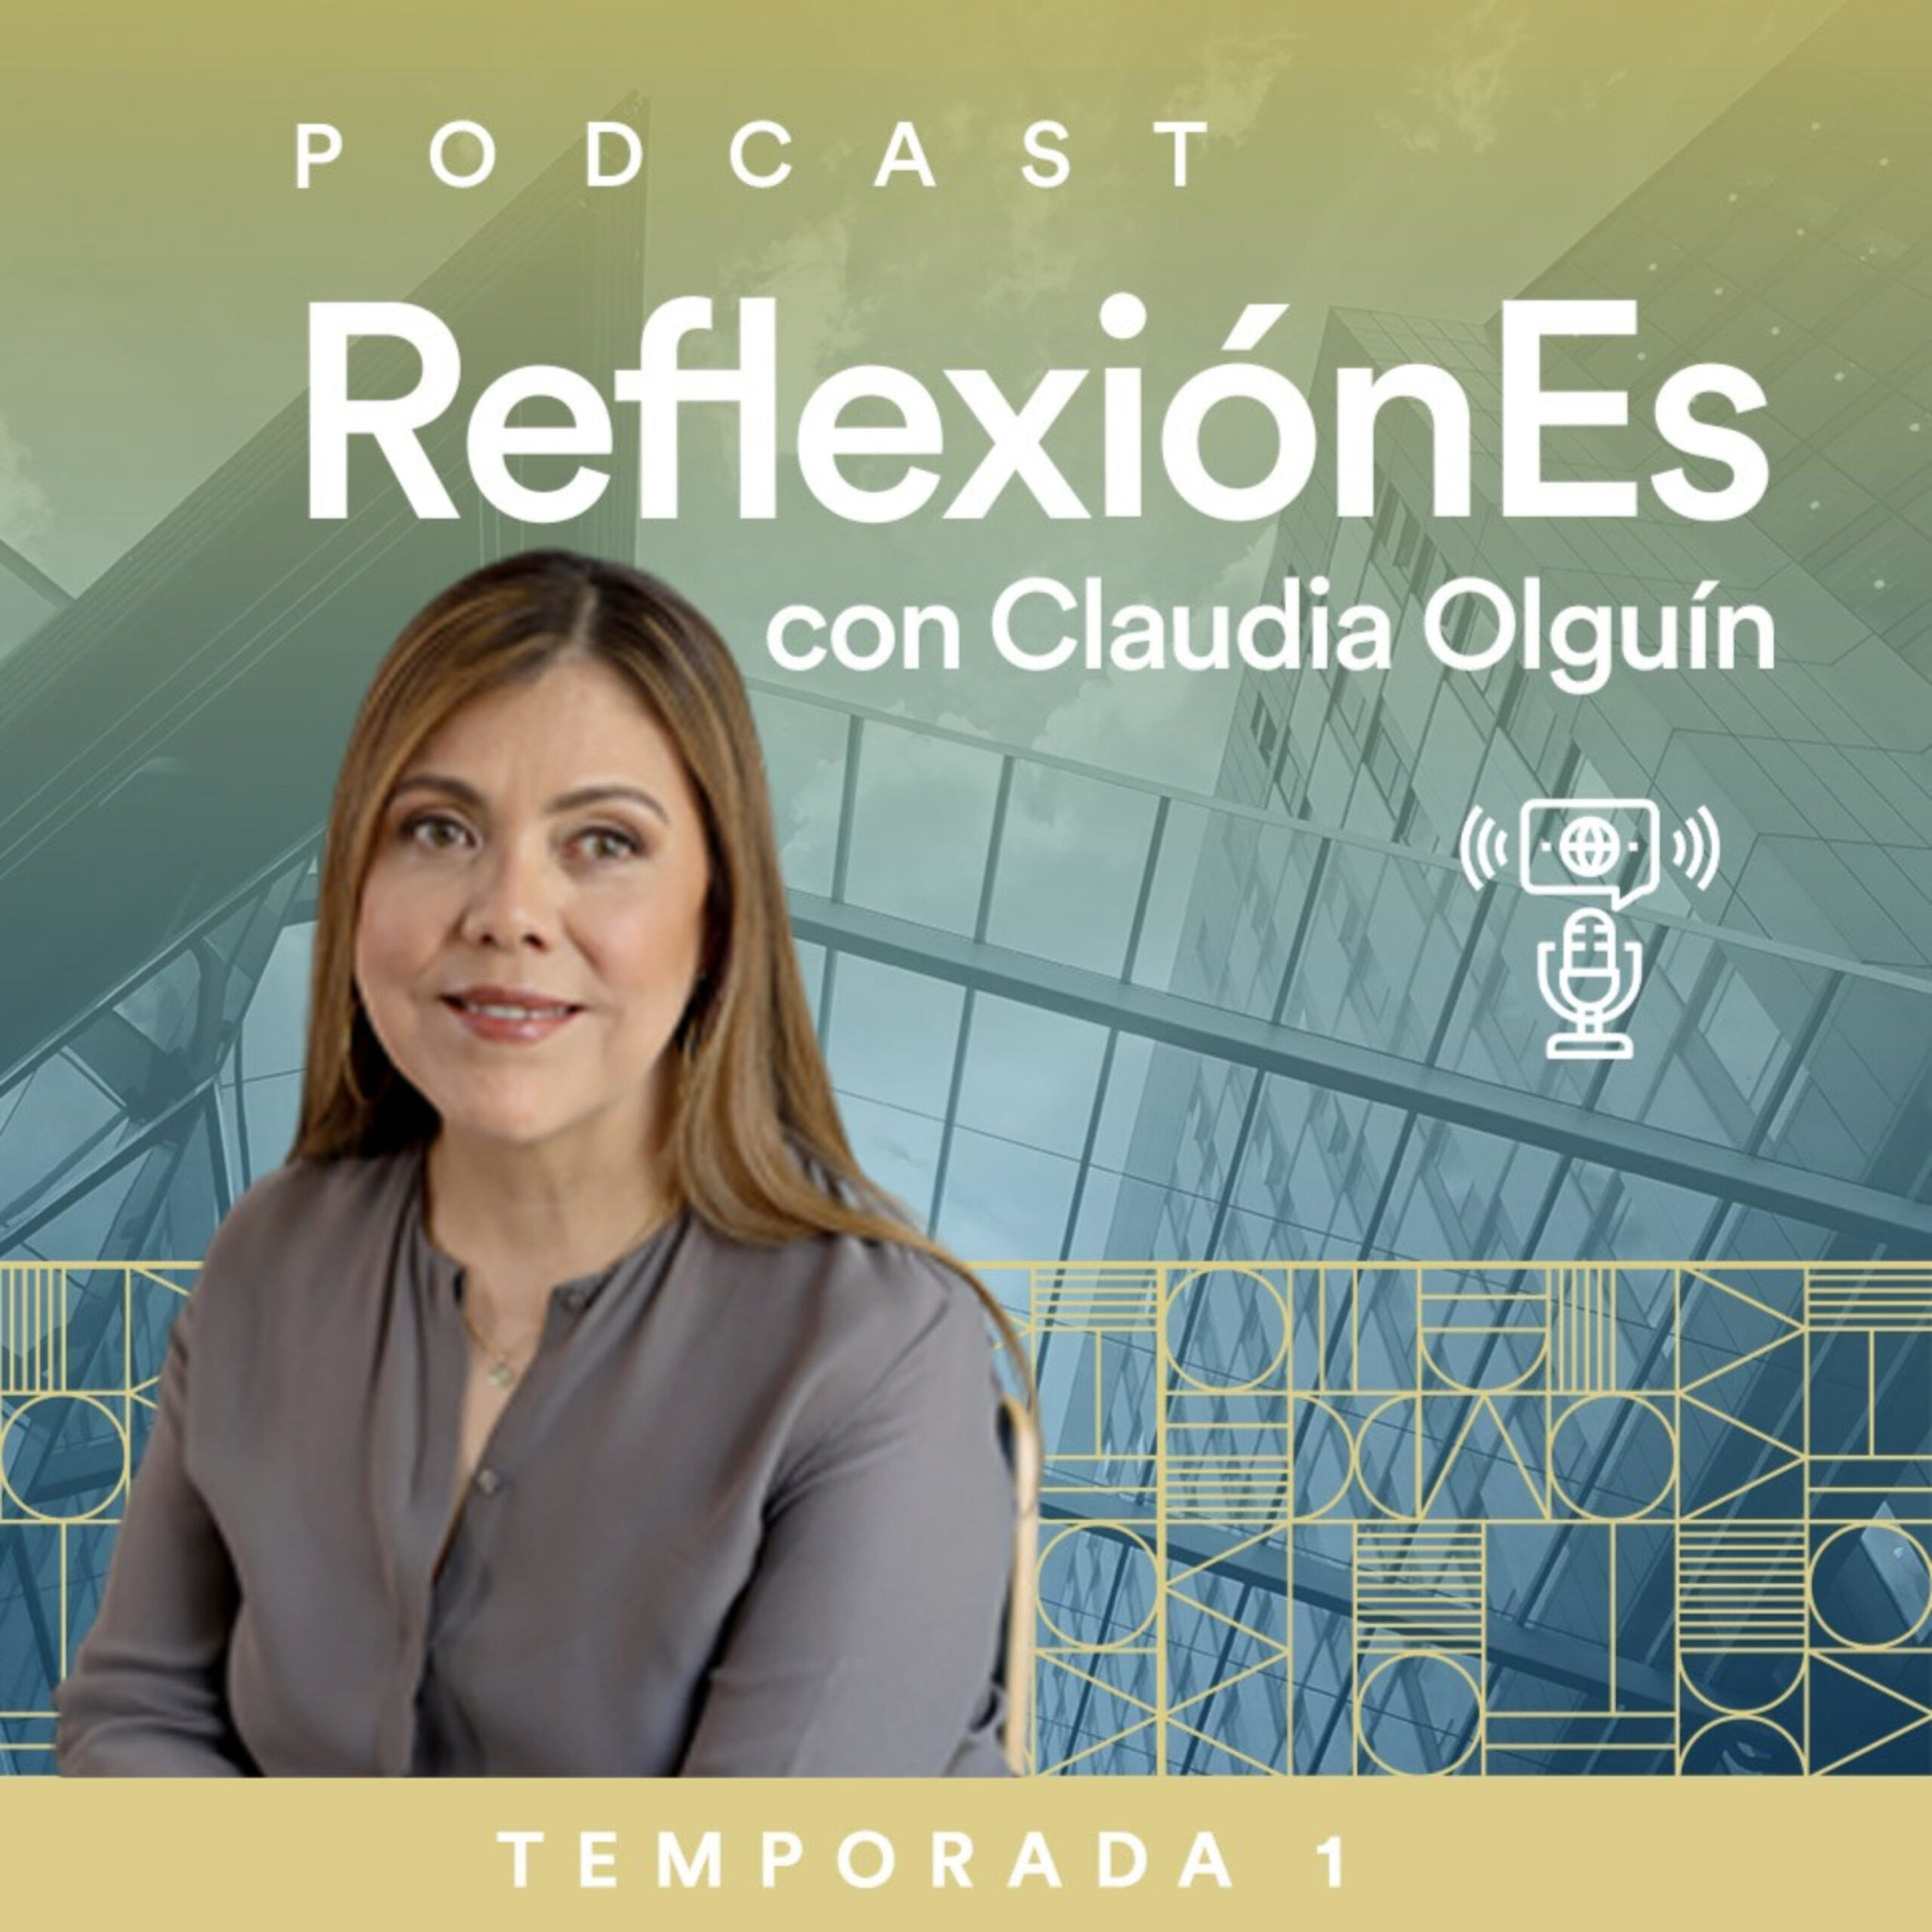 ReflexiónEs con Claudia Olguín